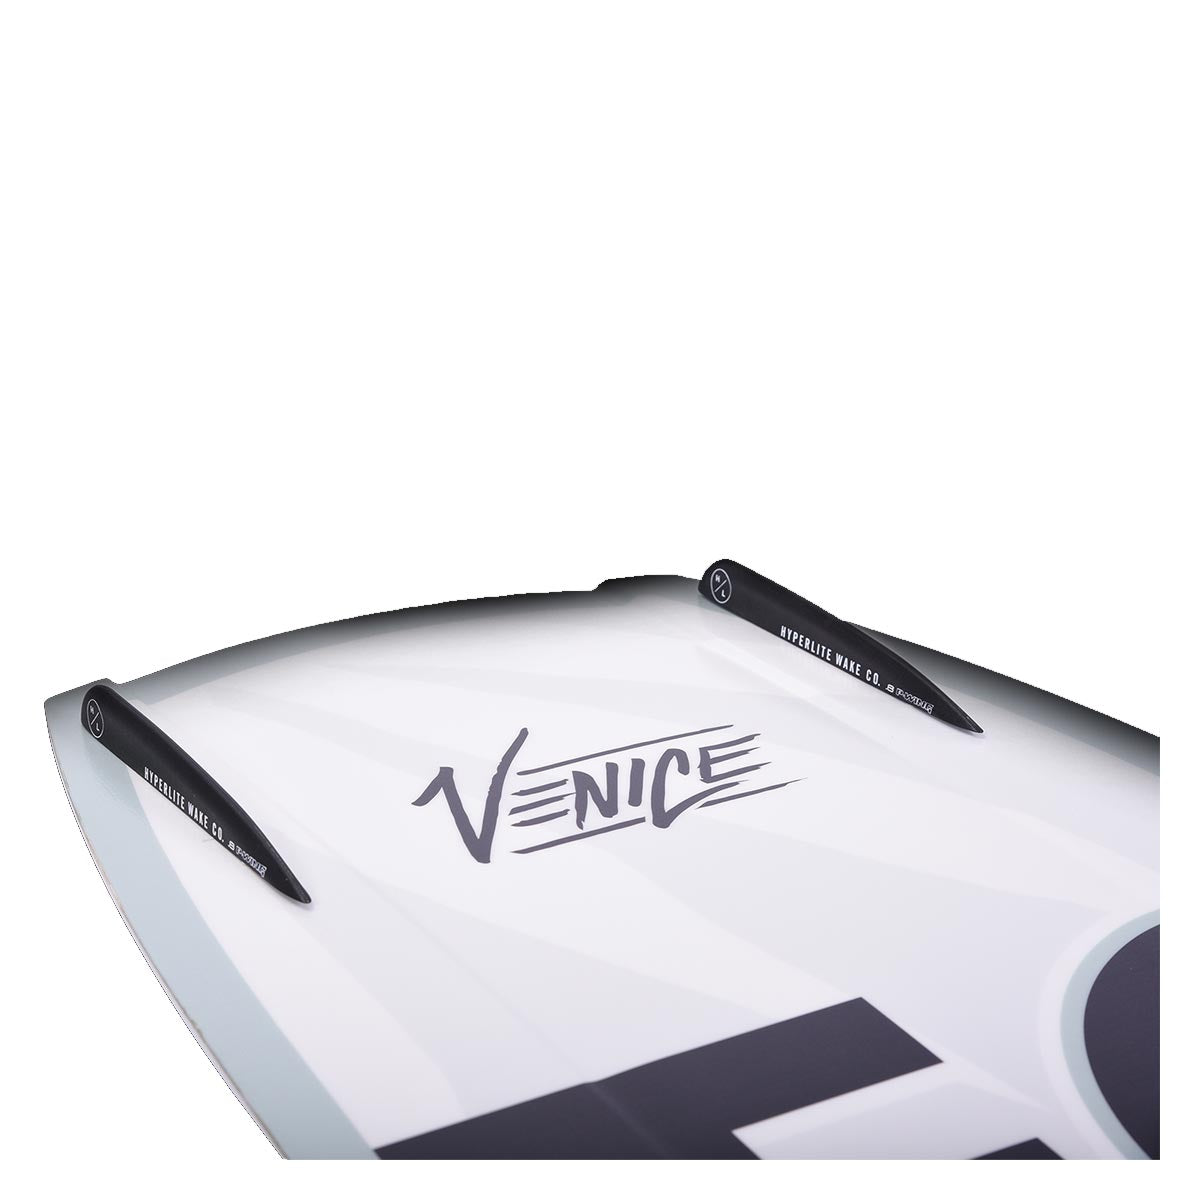 Hyperlite Women's Venice Wakeboard w/ Jinx Bindings